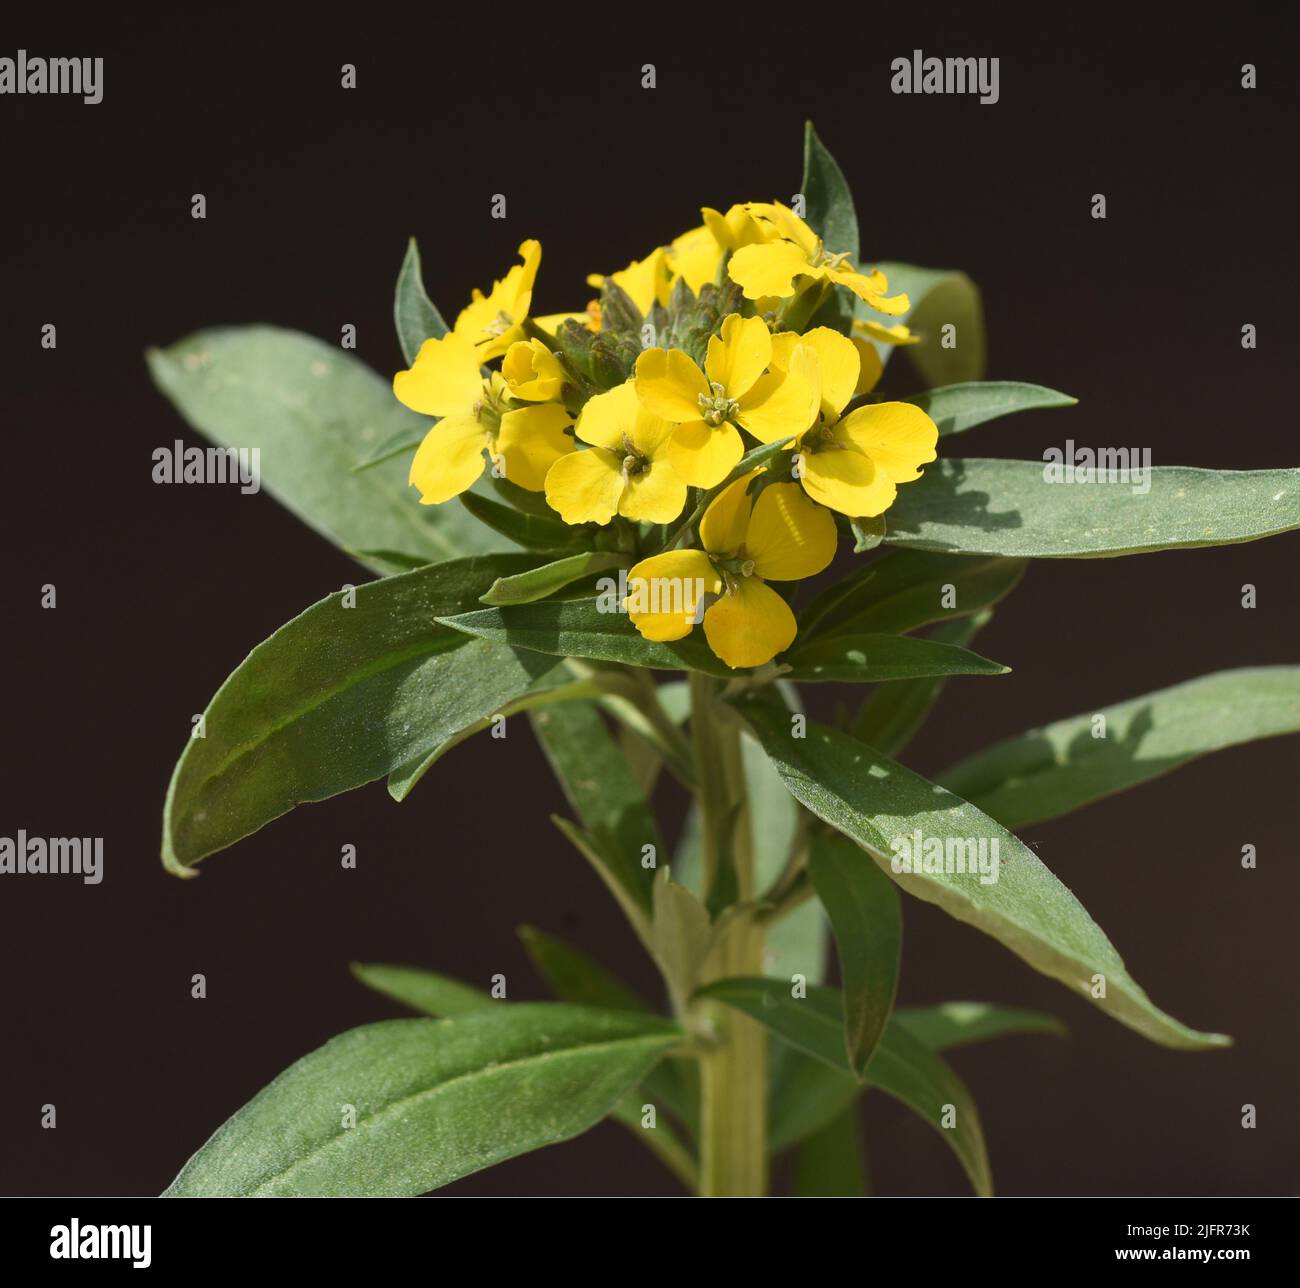 Goldlack, Cheiranthus, Cheiri ist eine Heilpflanze mit gelben Blueten und wird in der Medizin als Arzneimittel verwendet. Gold lacquer, Cheiranthus, C Stock Photo